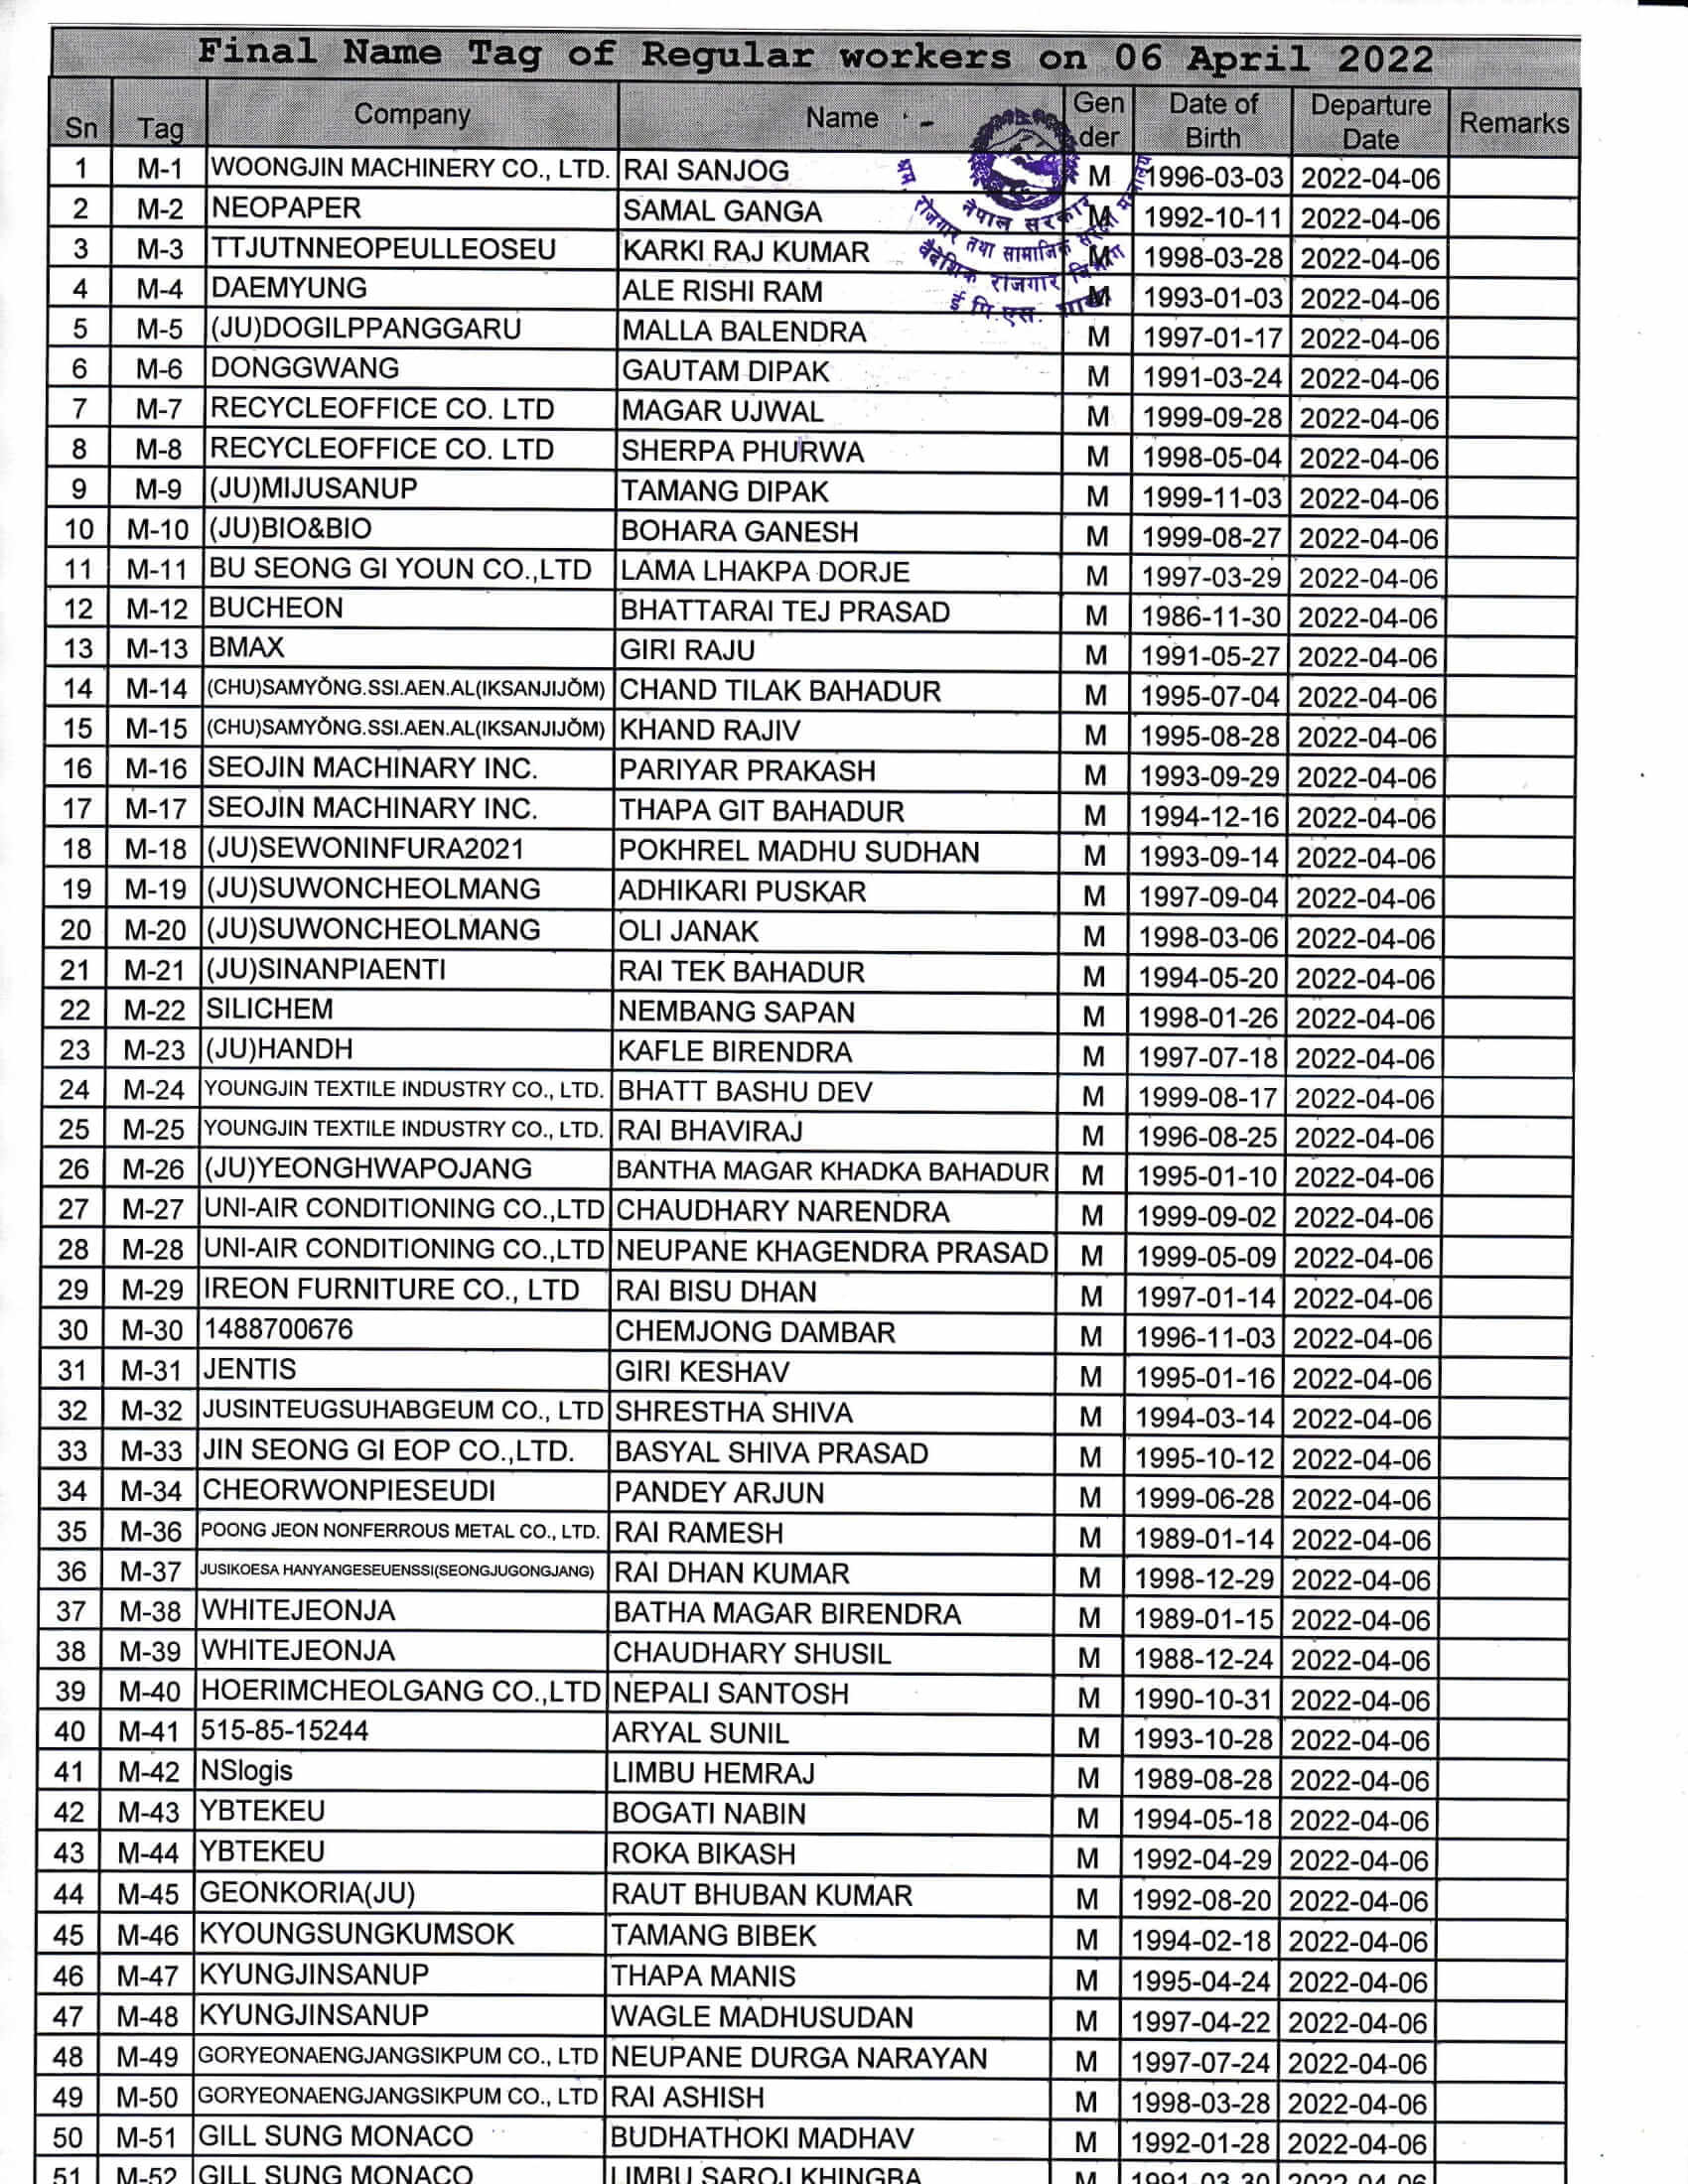 Final Name Lists of RW on 6 April 2022